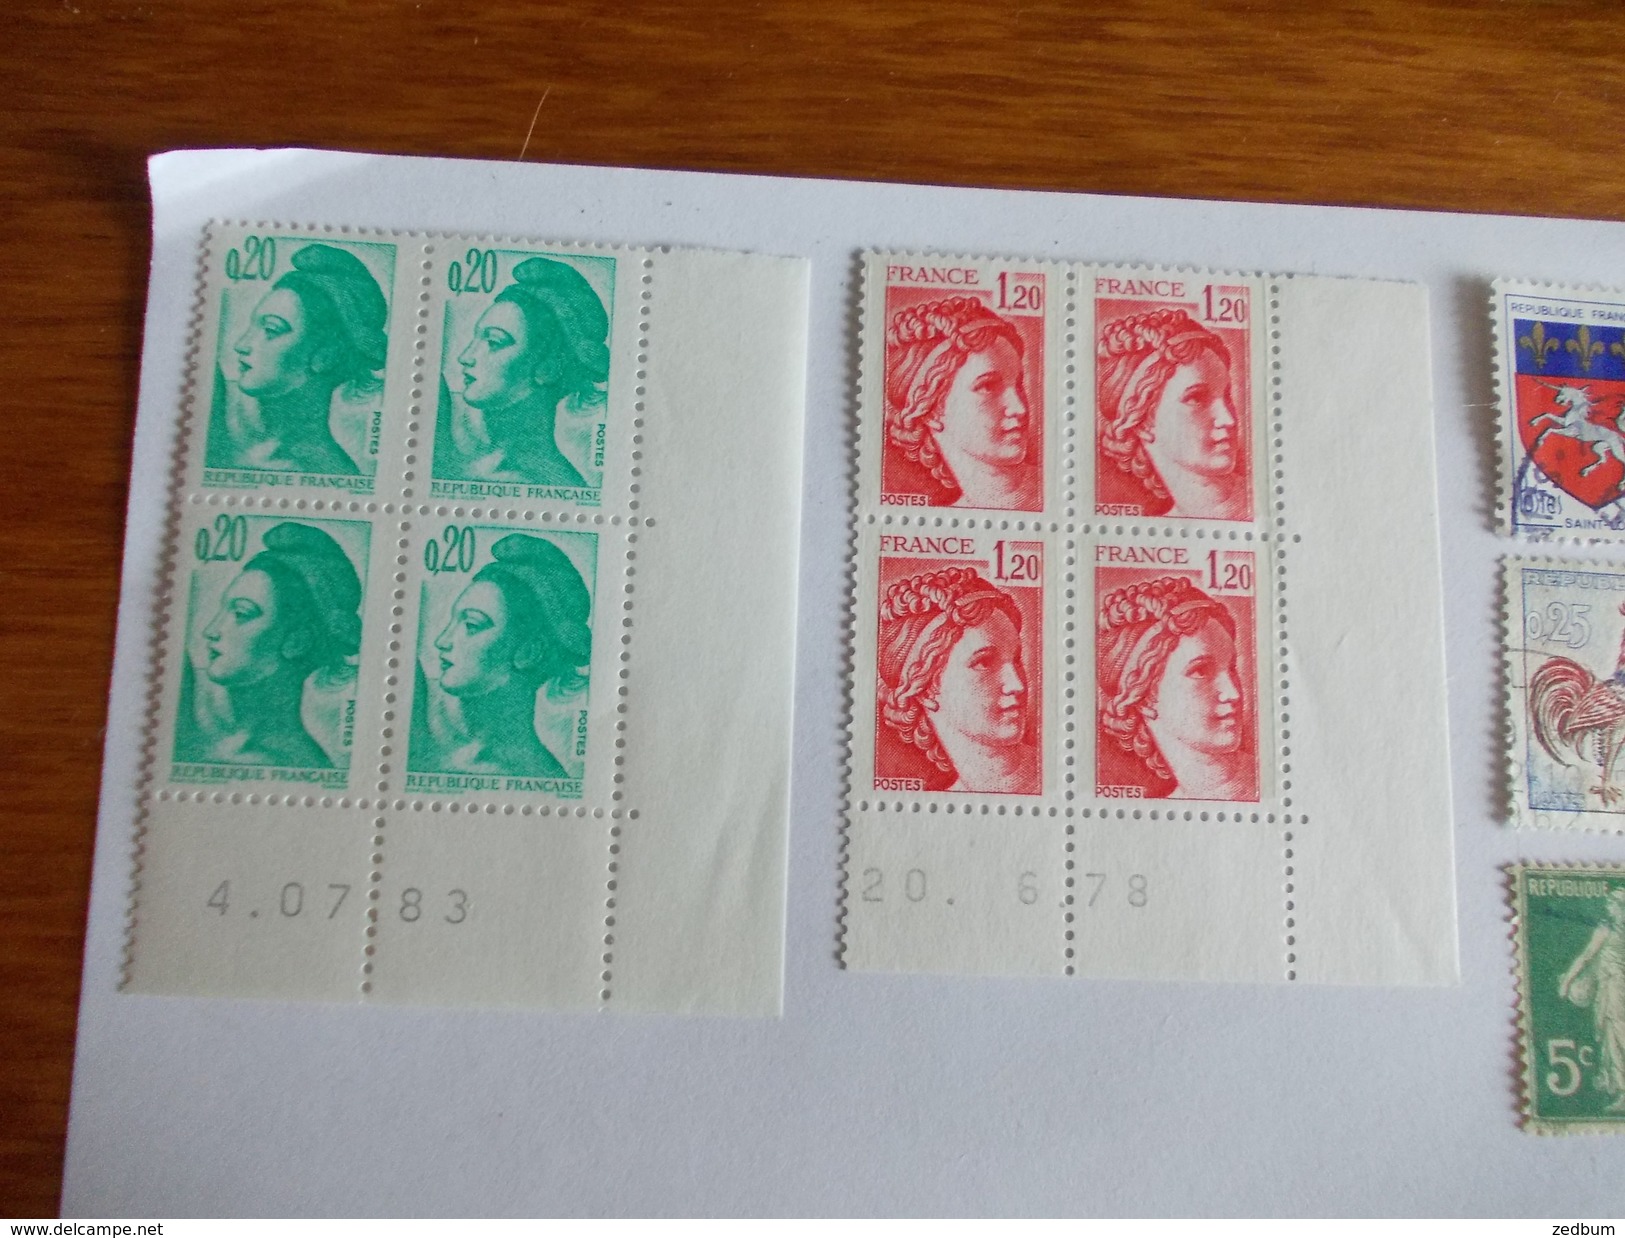 TIMBRE France Lot De Timbres à Identifier Dont Des Neufs N° 633 - Lots & Kiloware (mixtures) - Max. 999 Stamps